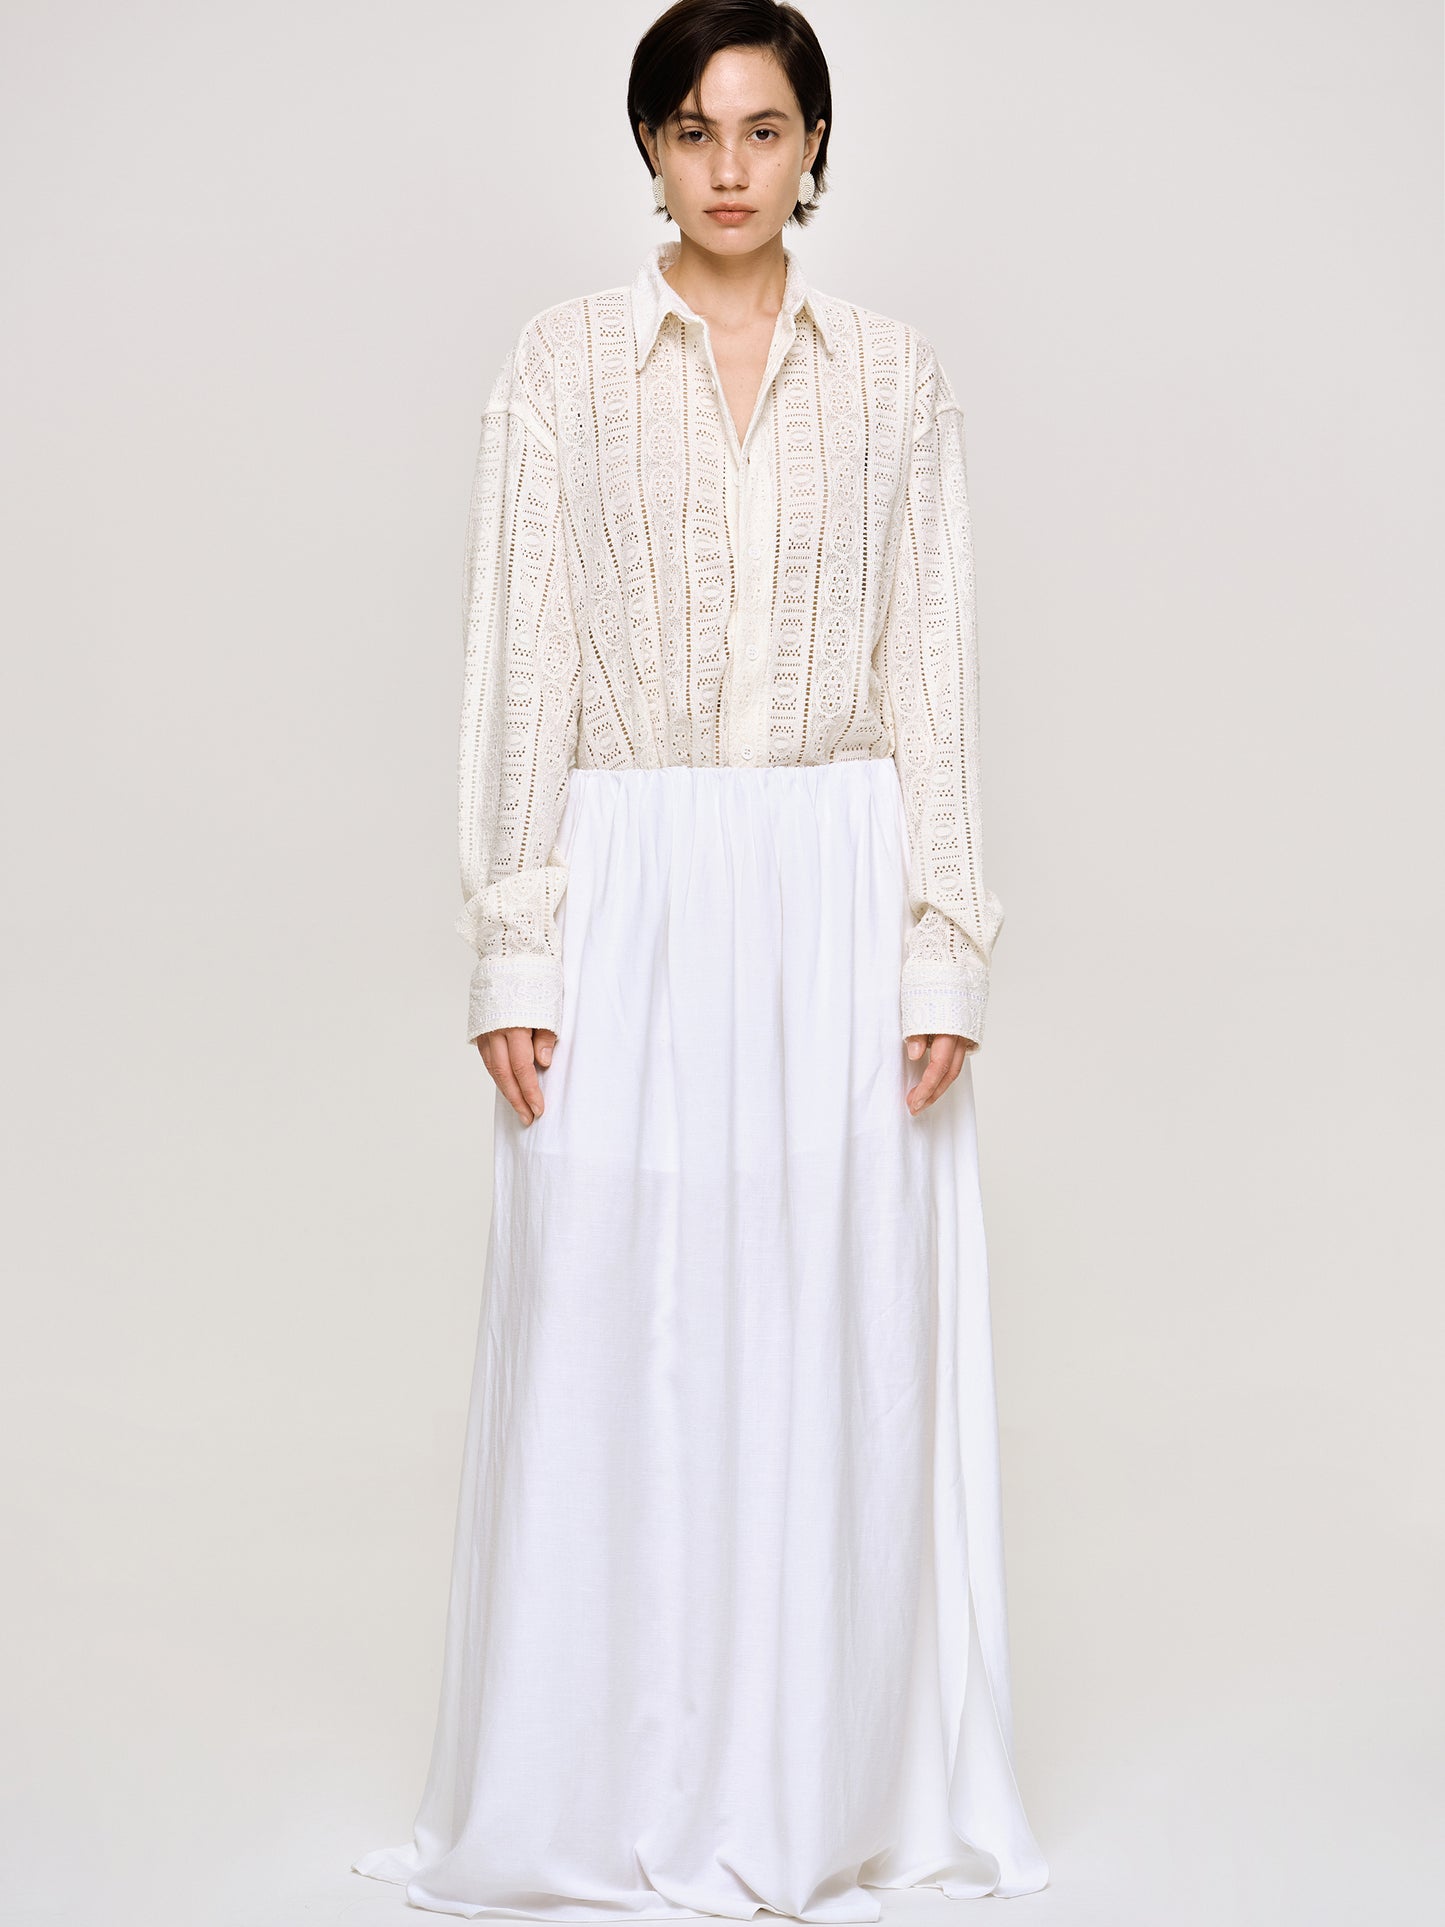 Dhanila Floor-Length Linen Skirt, Optic White